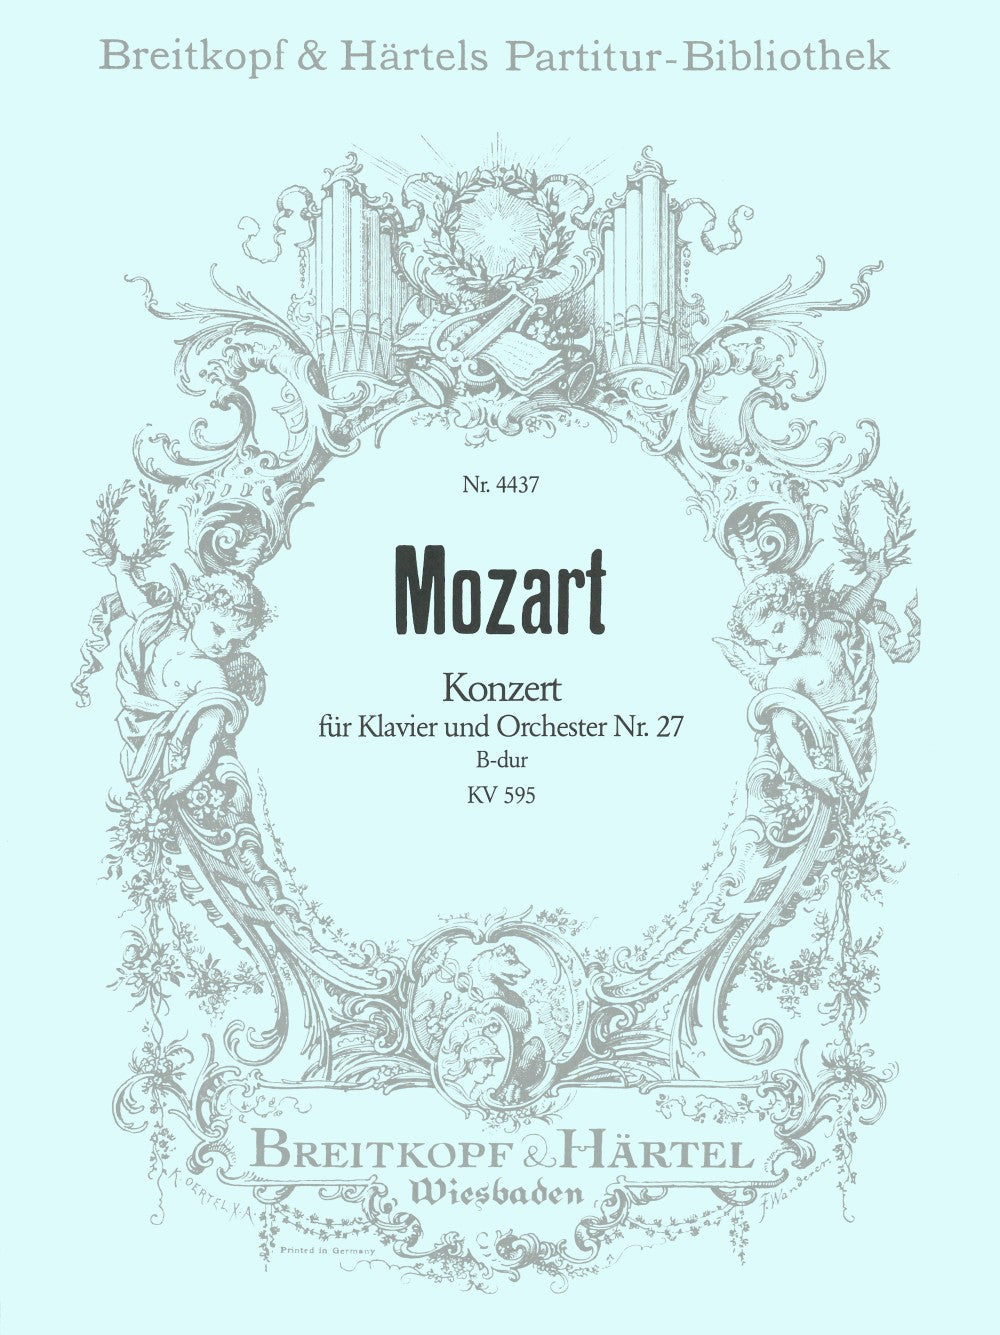 Mozart Piano Concerto No 27 in B-flat major K 595